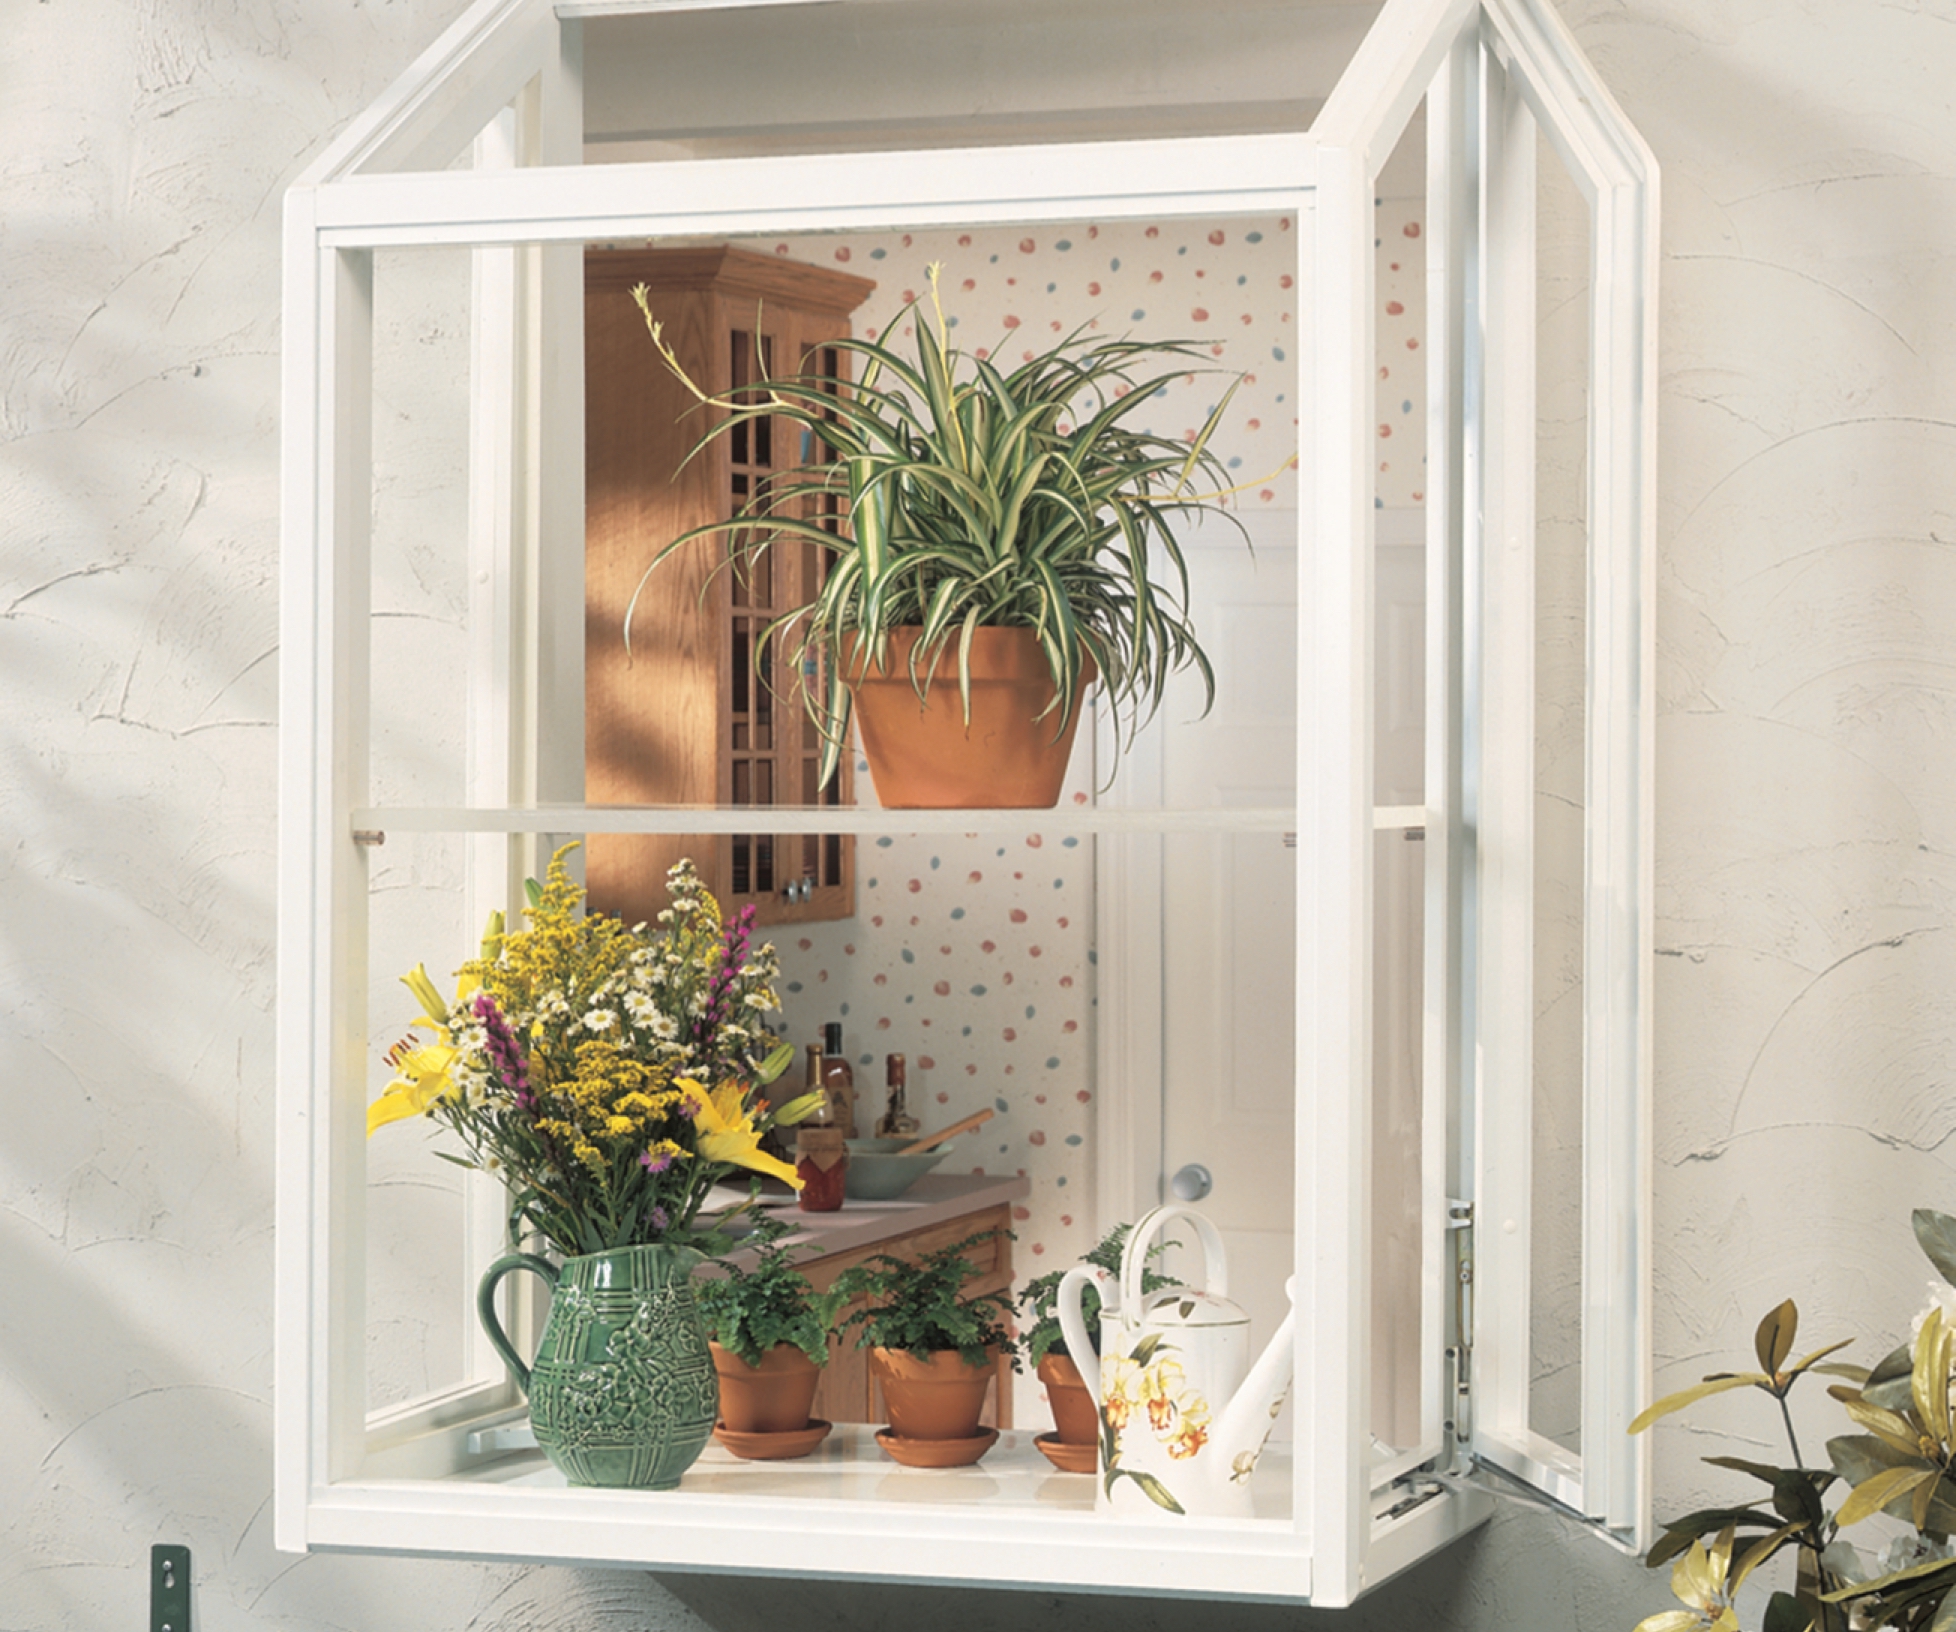 Garden Window And Windows For, Kitchen Garden Window Manufacturers